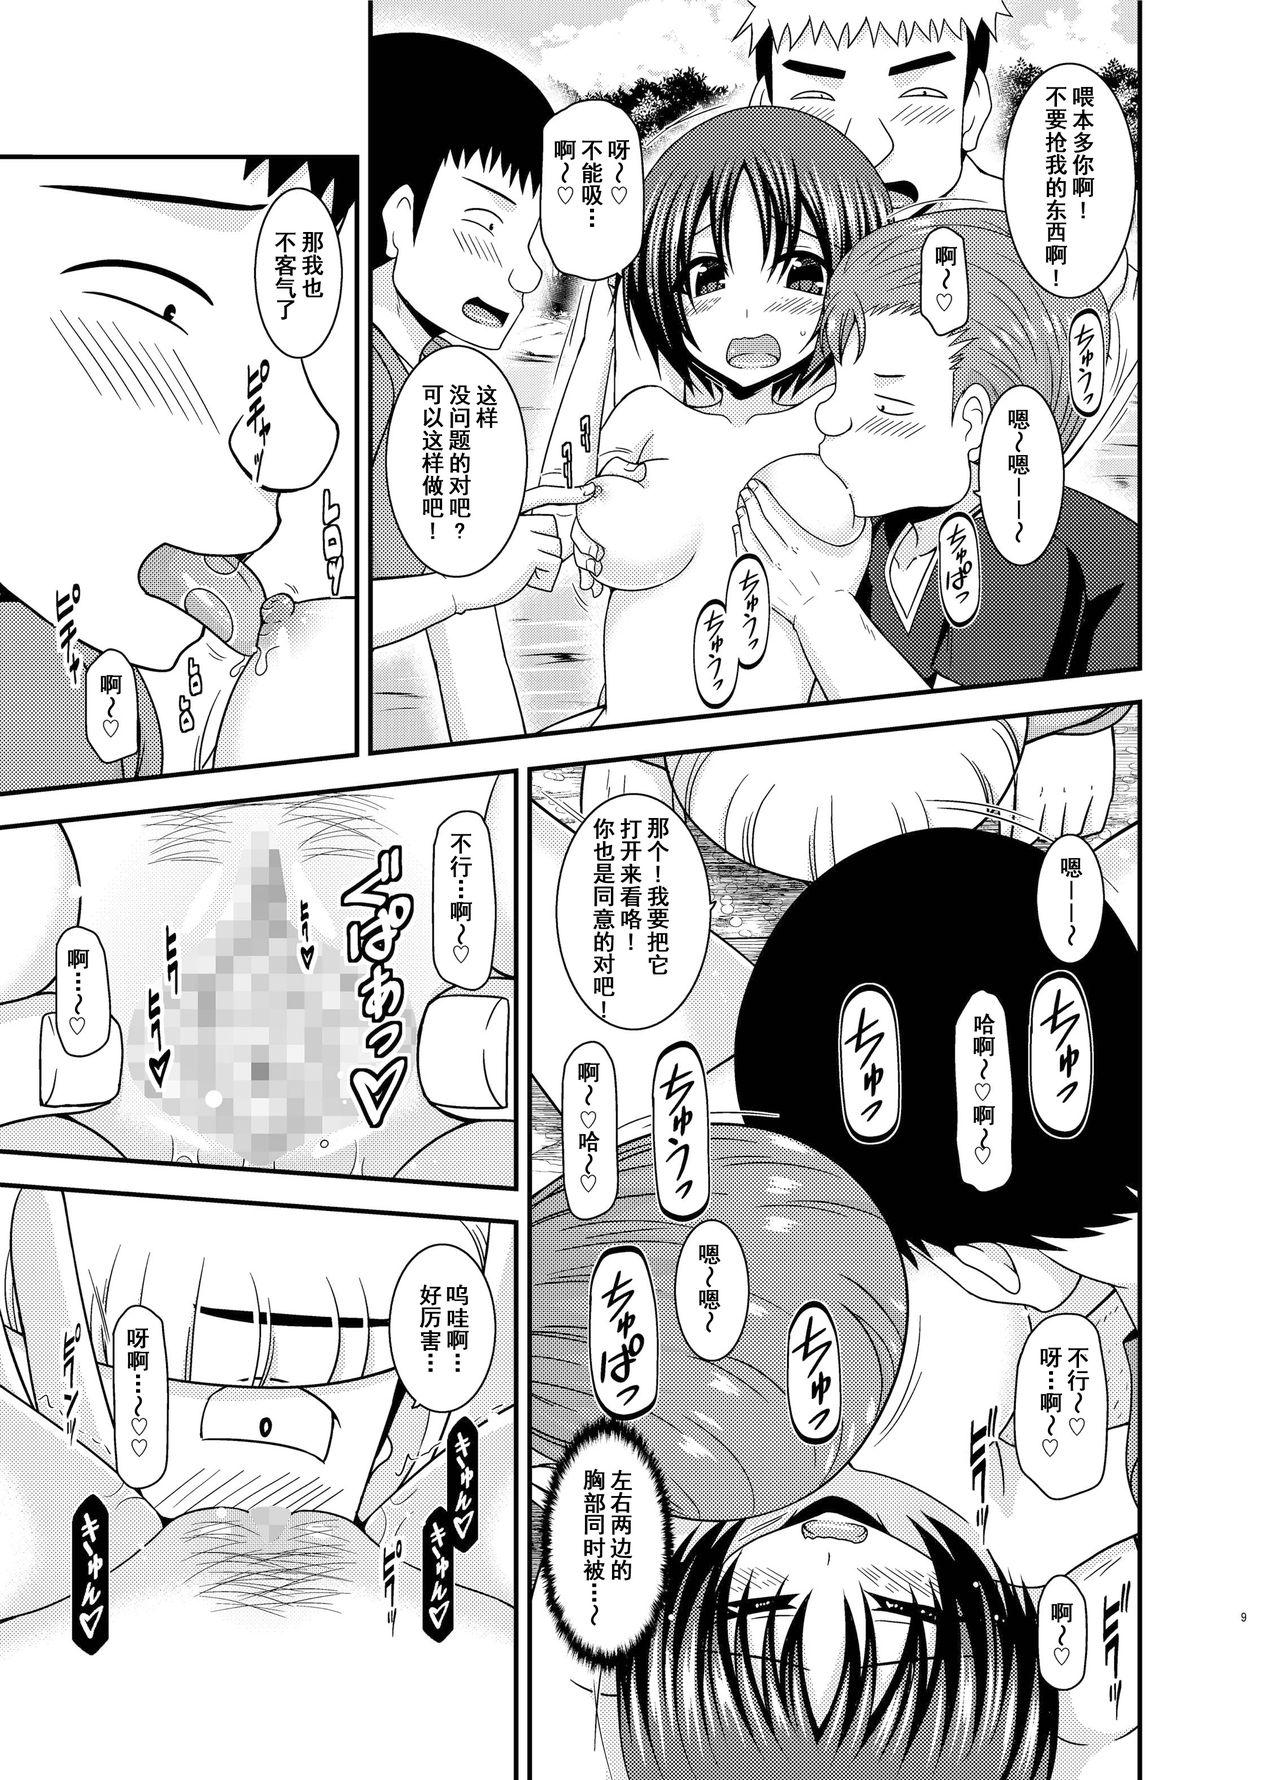 Awesome Roshutsu Shoujo Nikki 25 Satsume - Original Shorts - Page 8